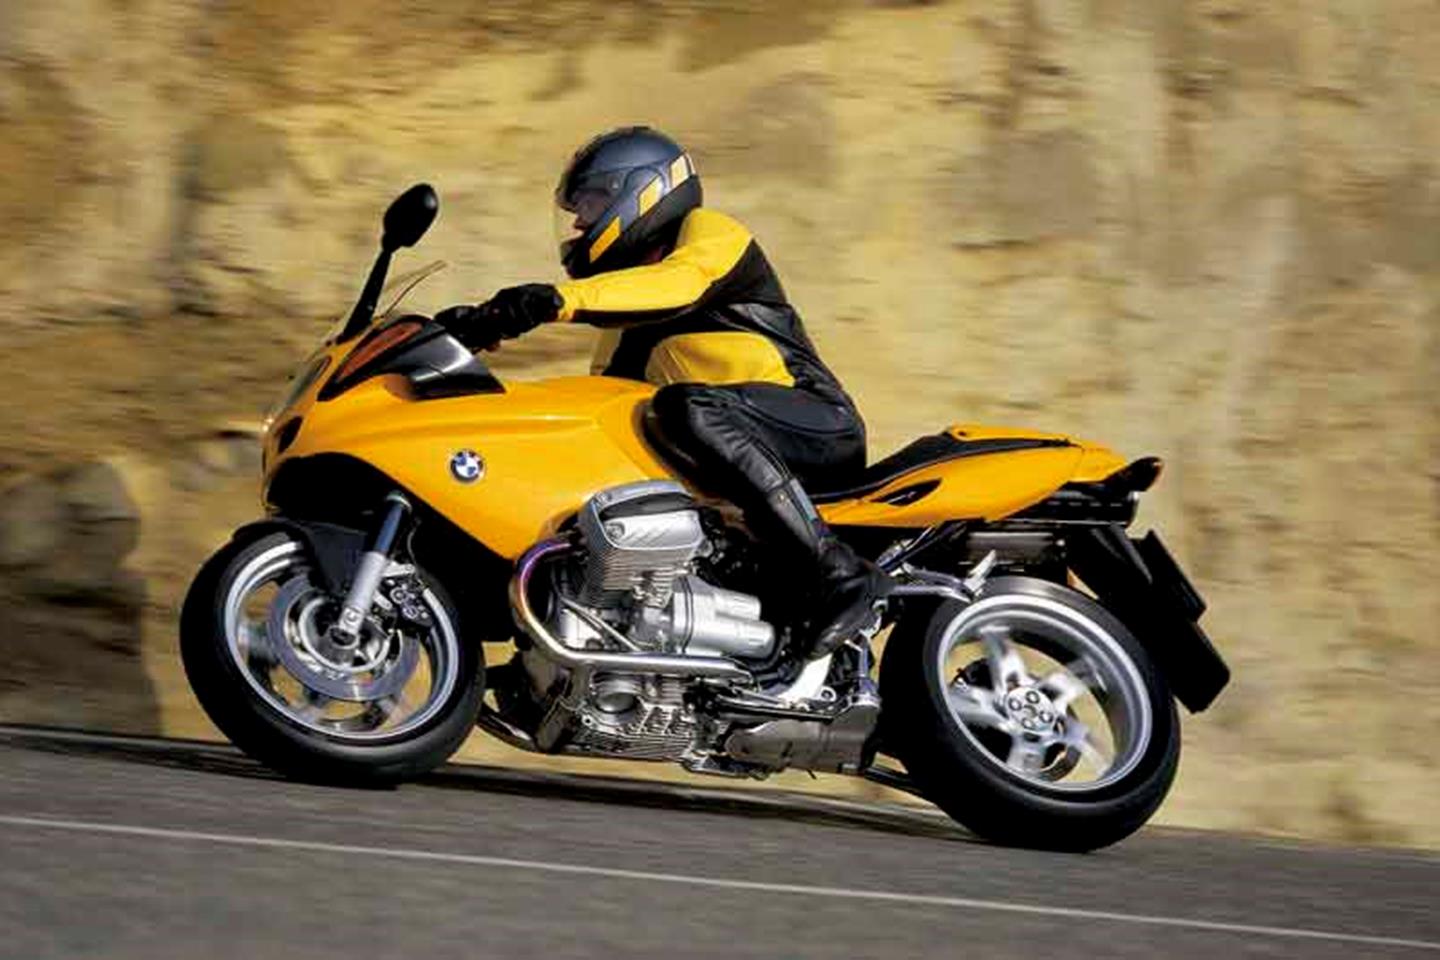 Atlas motor bike BMW R1100S Yellow 1-24 Scale New in Case 